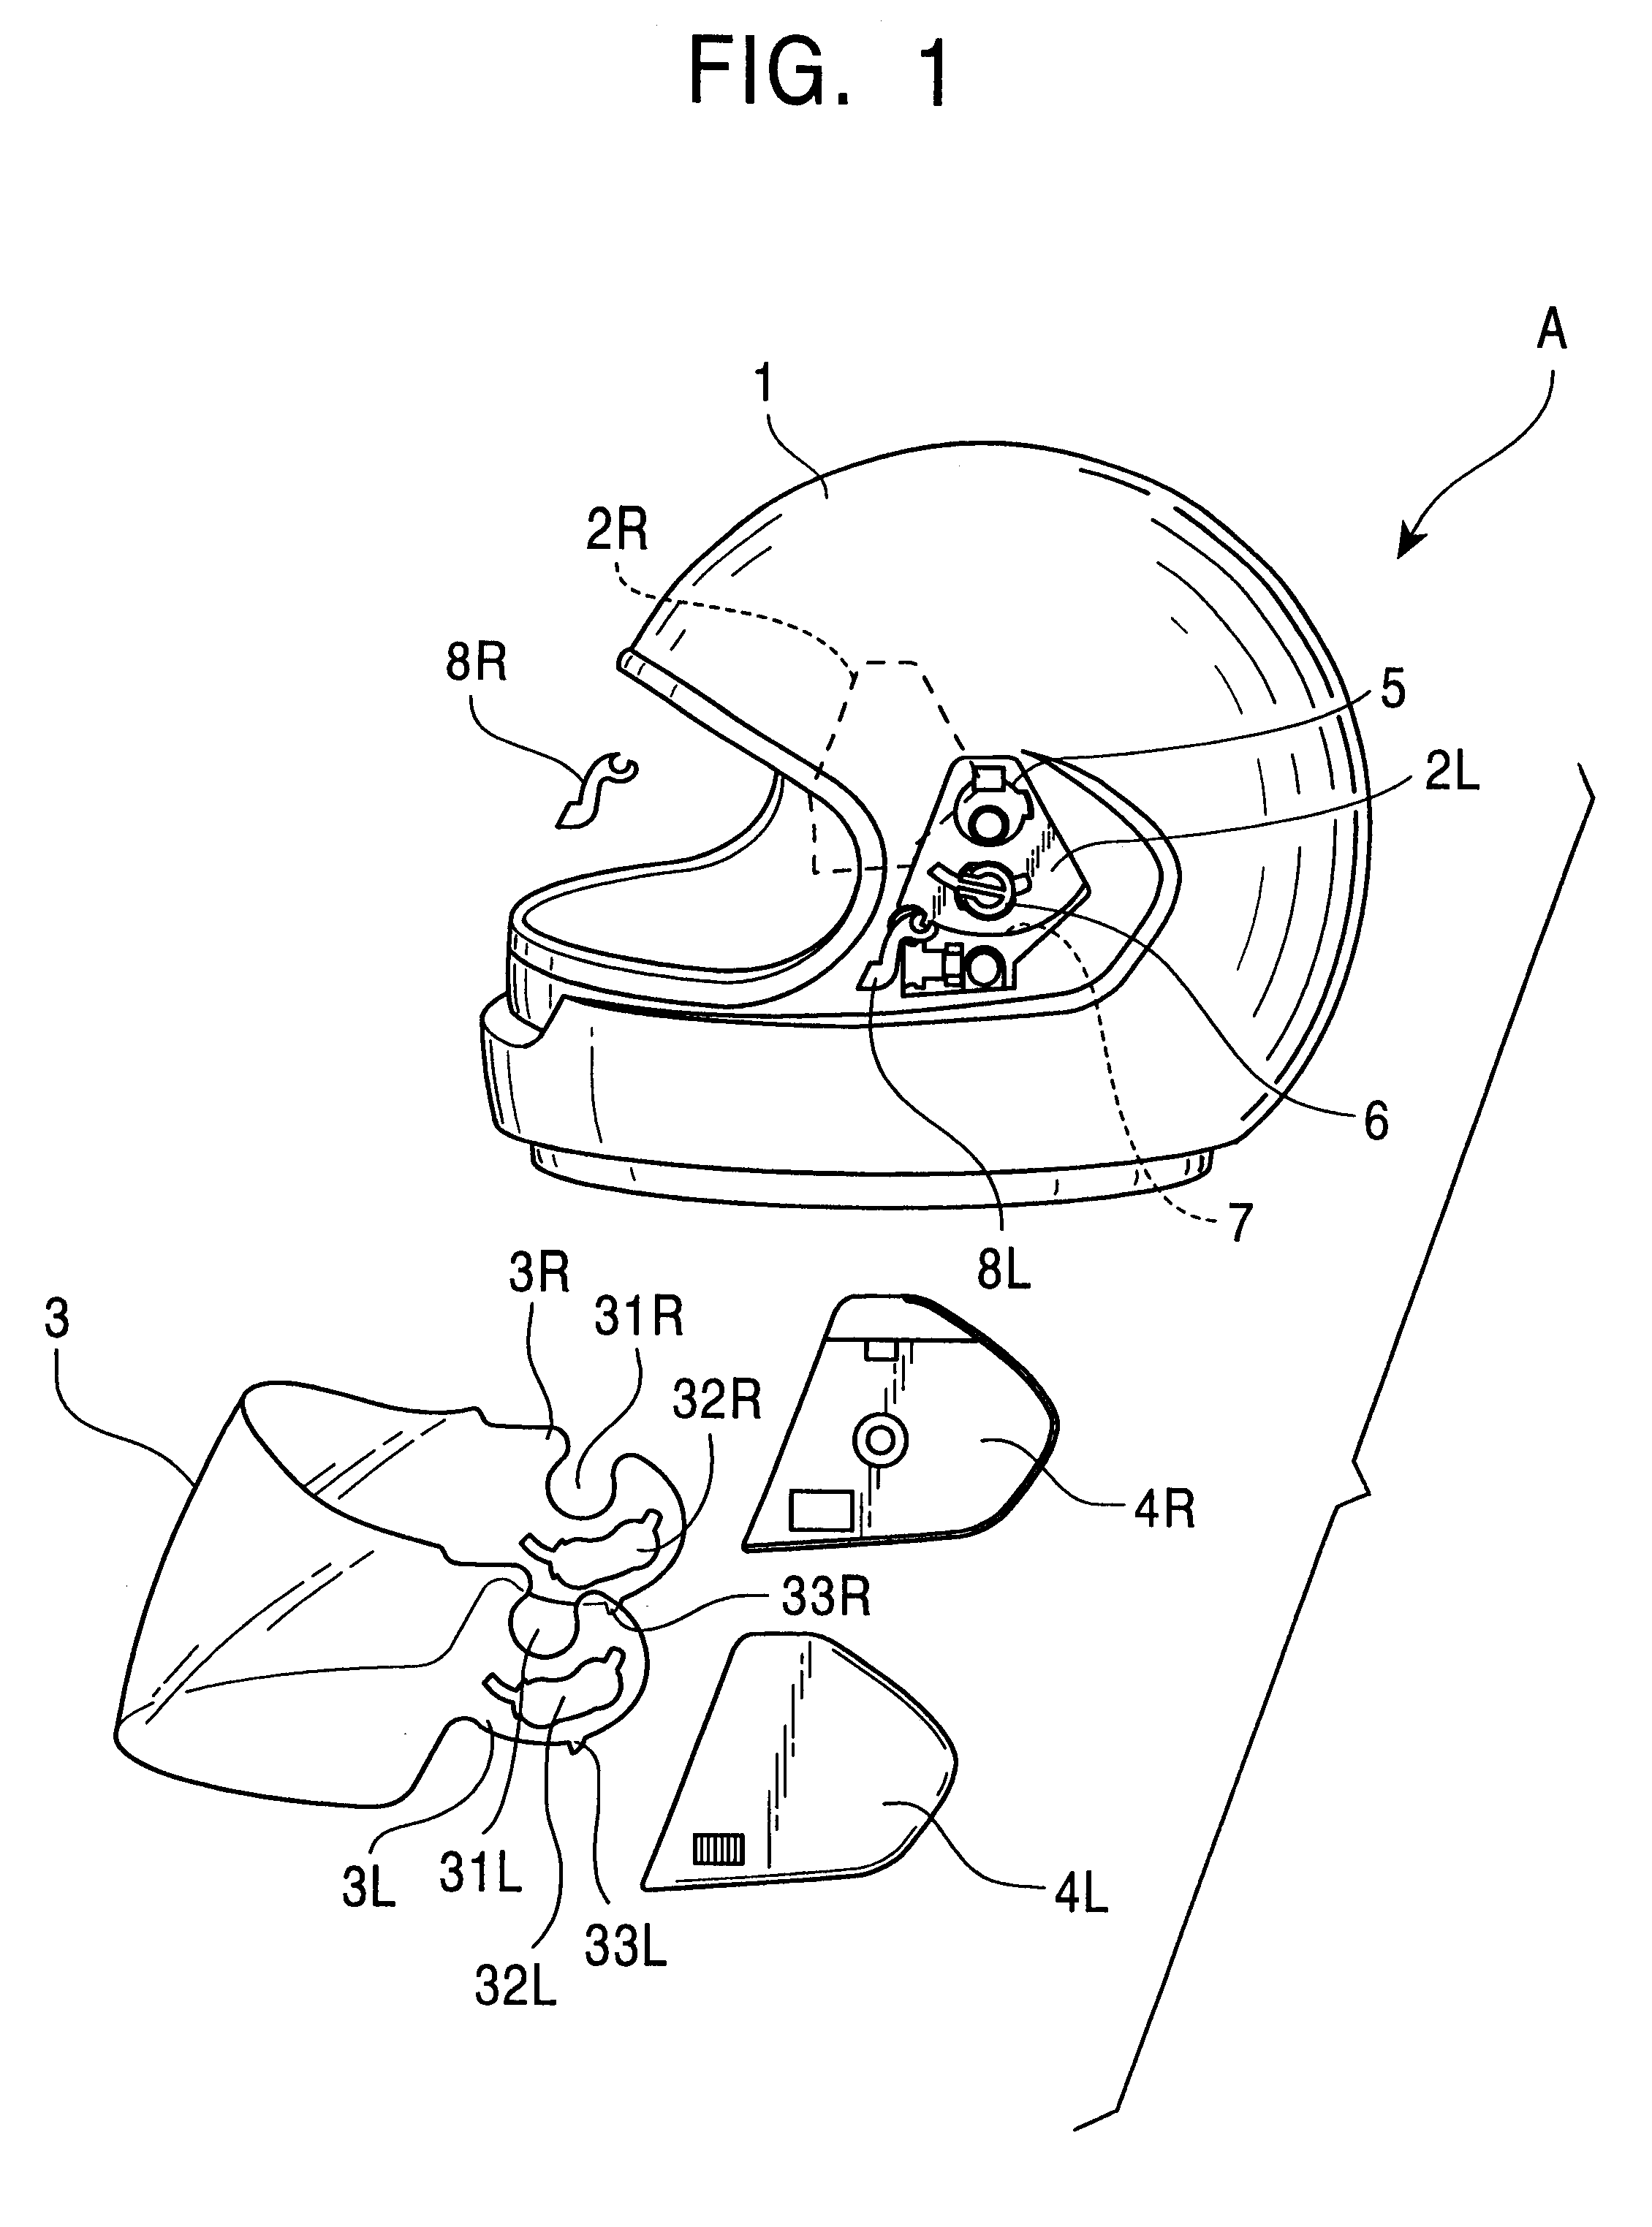 Shield fixing structure in helmet